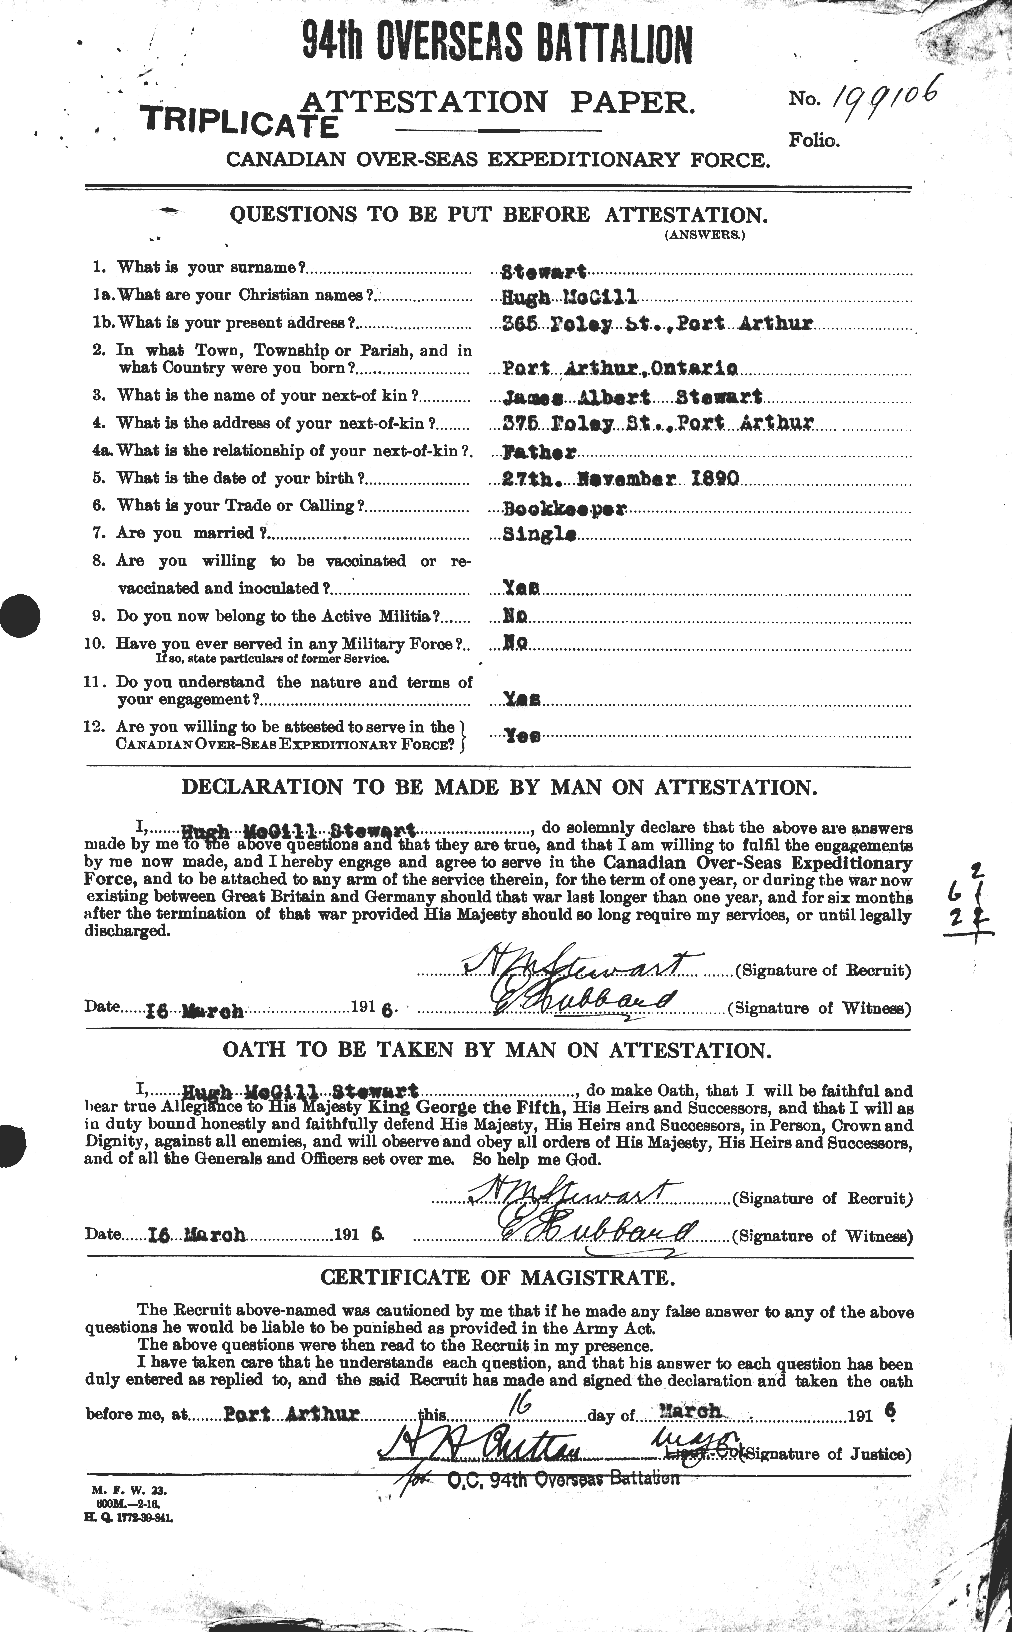 Dossiers du Personnel de la Première Guerre mondiale - CEC 623368a